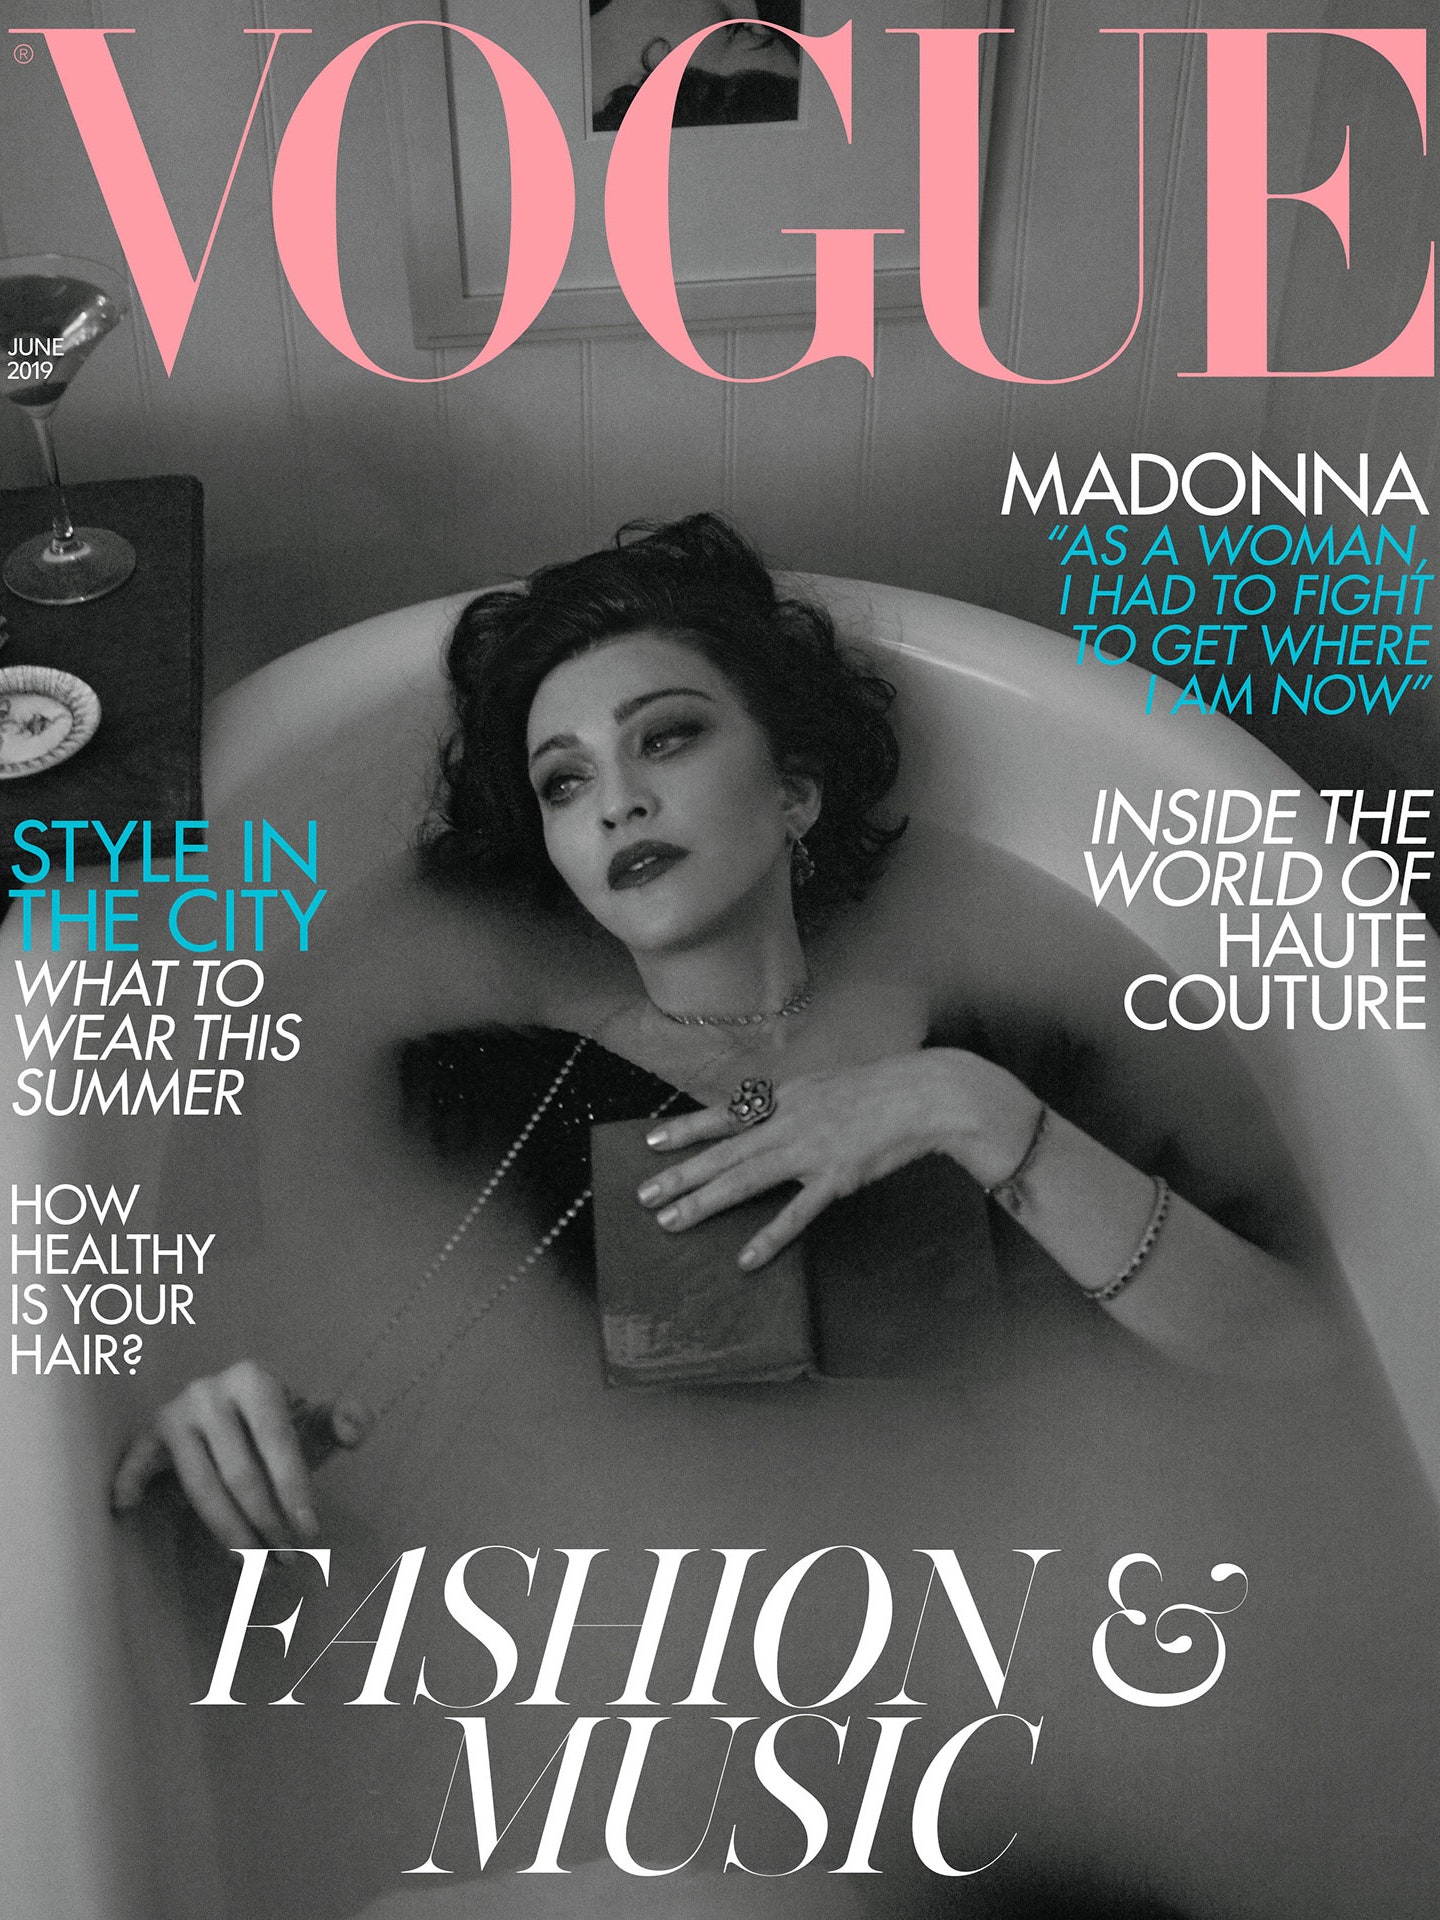 Đây là trang bìa thứ 2 mà Madona xuất hiện trên bìa Vogue Anh.